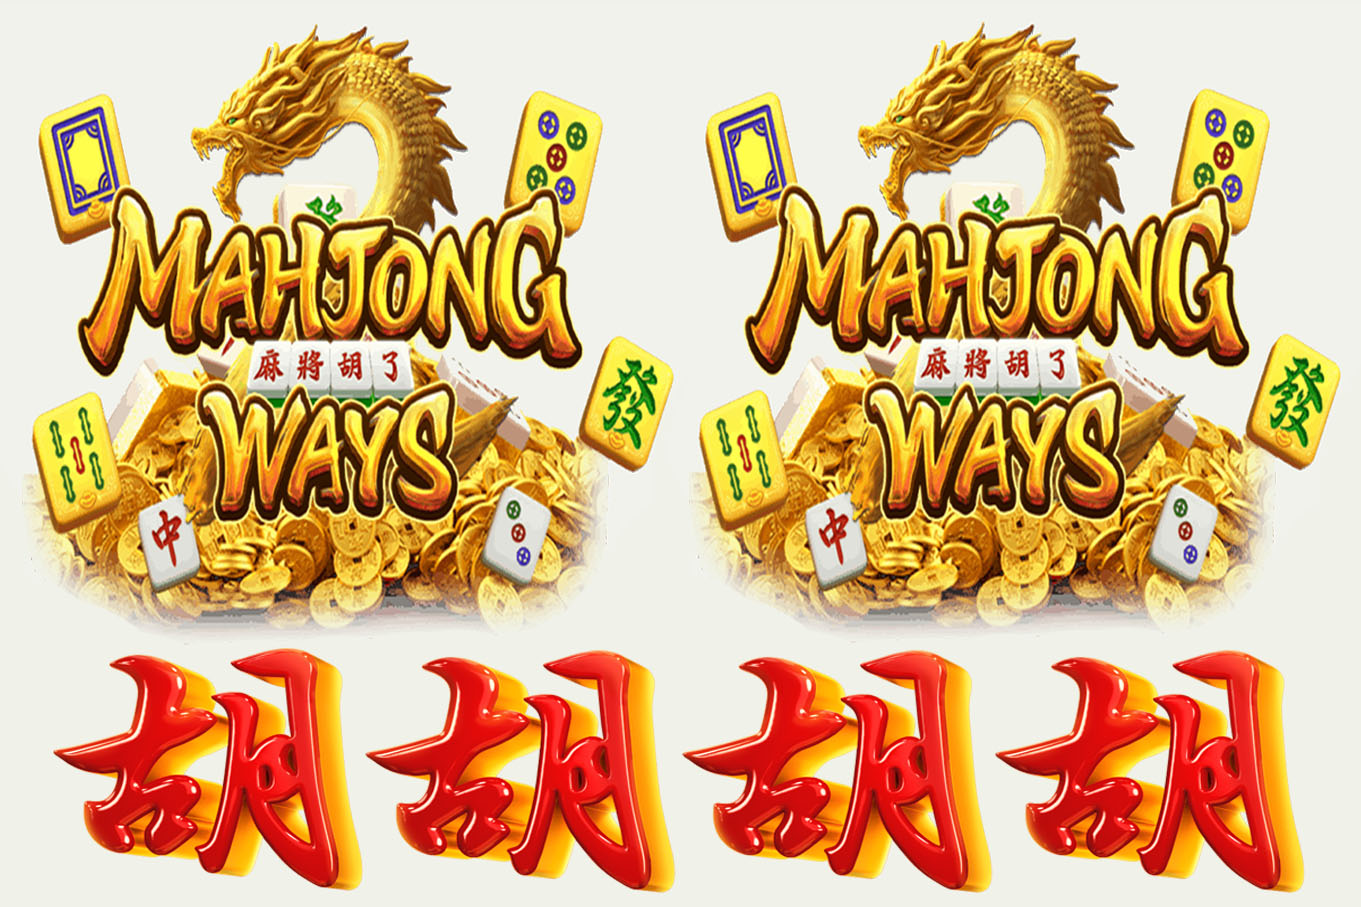 Evolusi Mahjong Ways